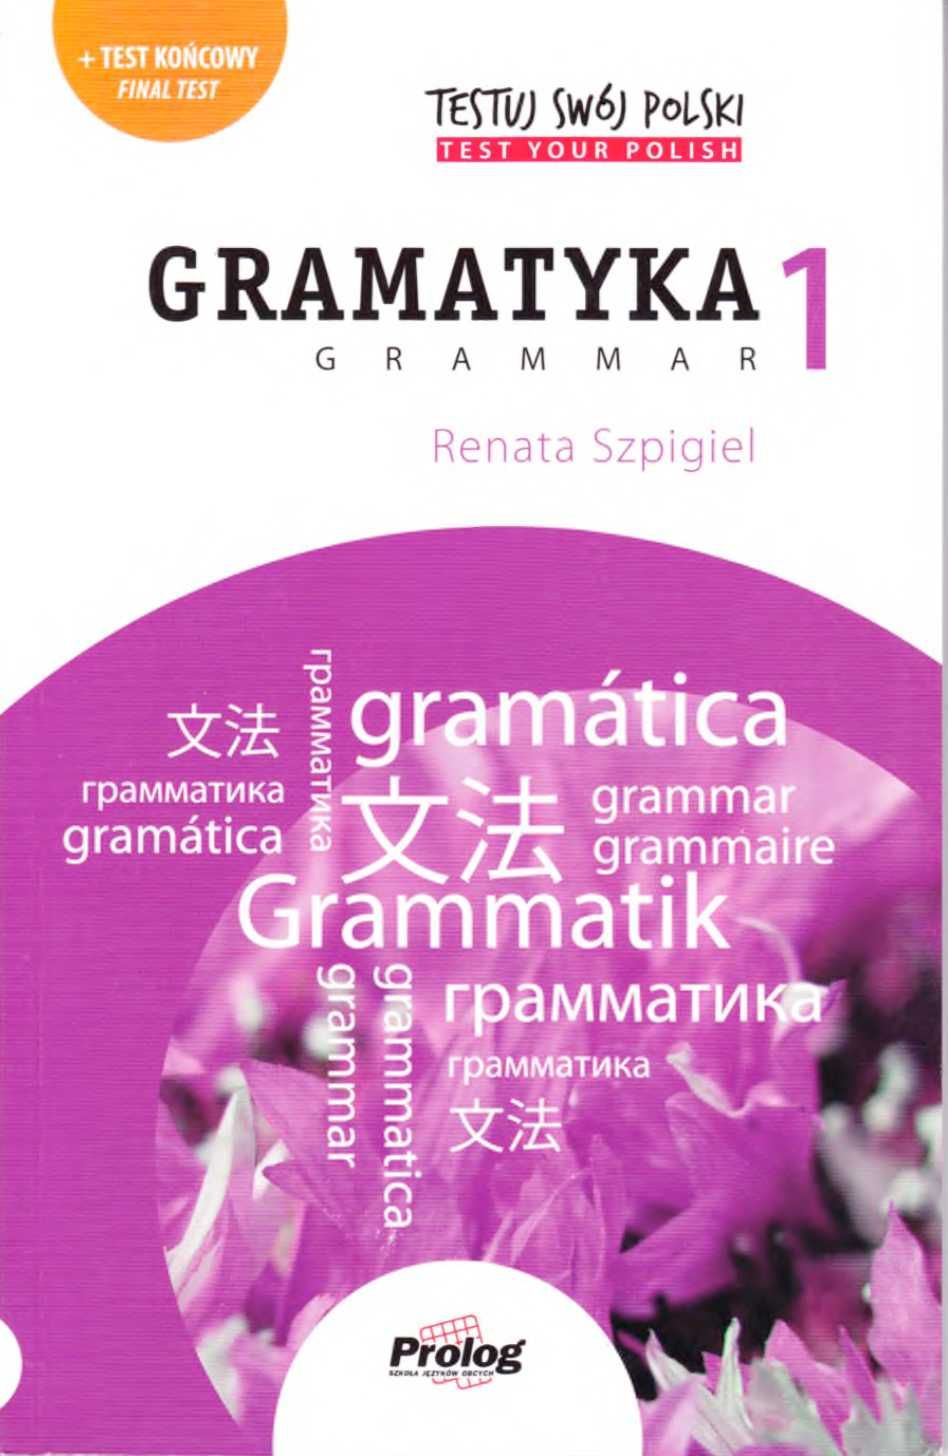 Testuj Swój Polski Gramatyka 1. Учебник для изучения польского языка